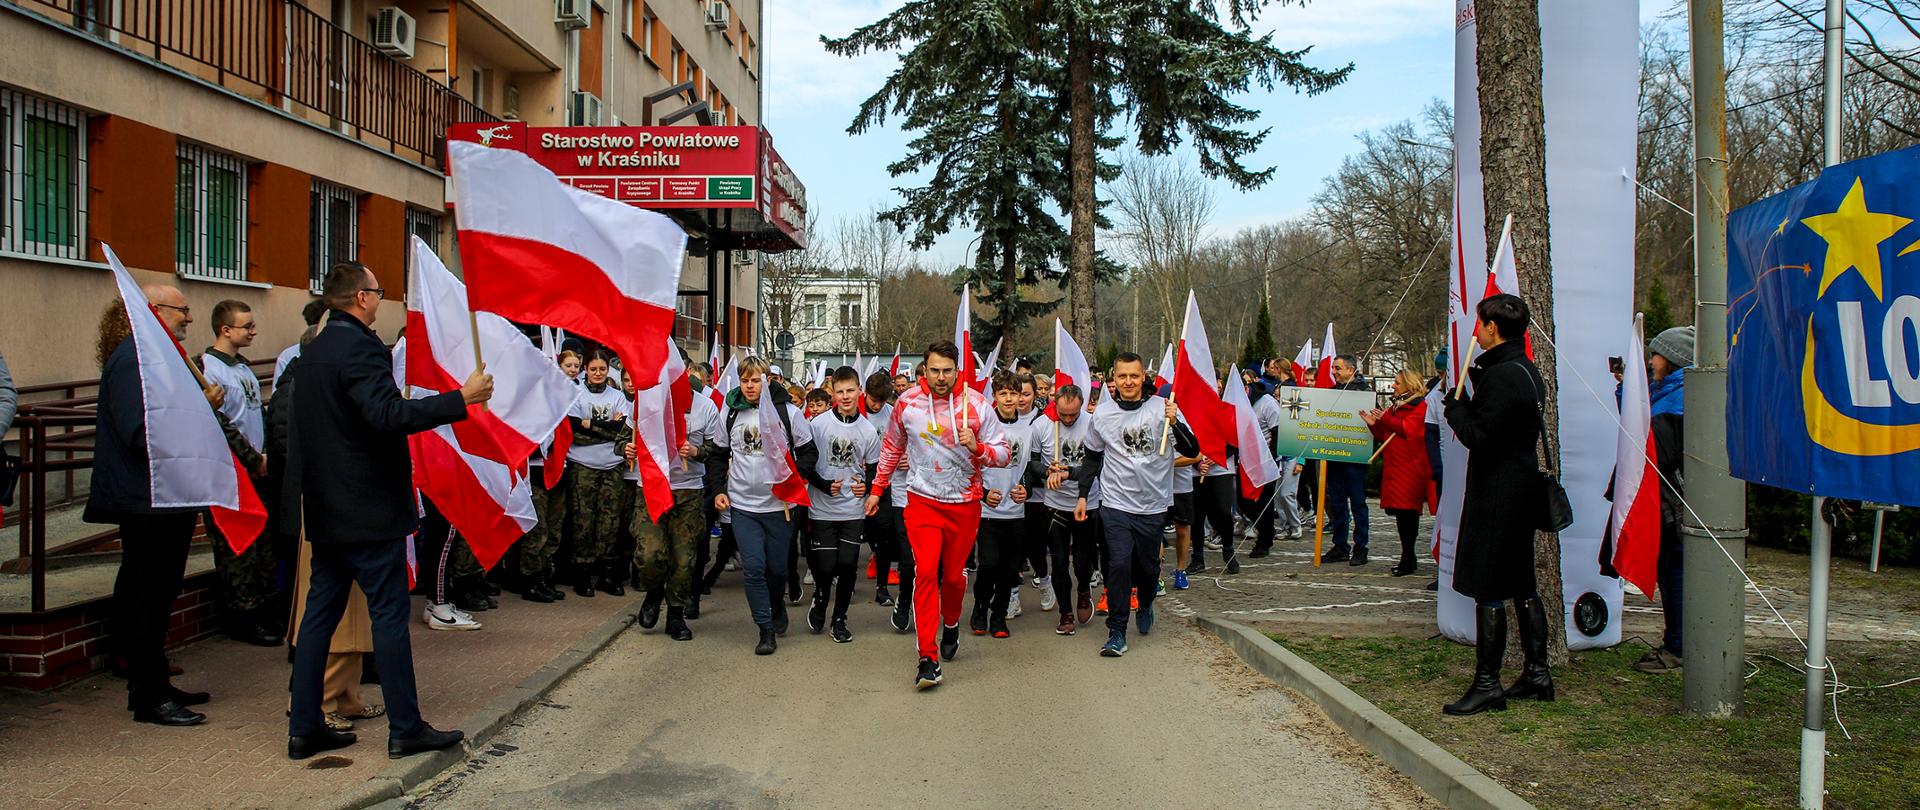 Na zdjęciu grupa ludzi podczas startu biegu. Każdy z uczestników ubrany jest w białą koszulkę z wizerunkiem Majora Hieronima Dekutowskiego oraz trzyma biało-czerwoną flagę.